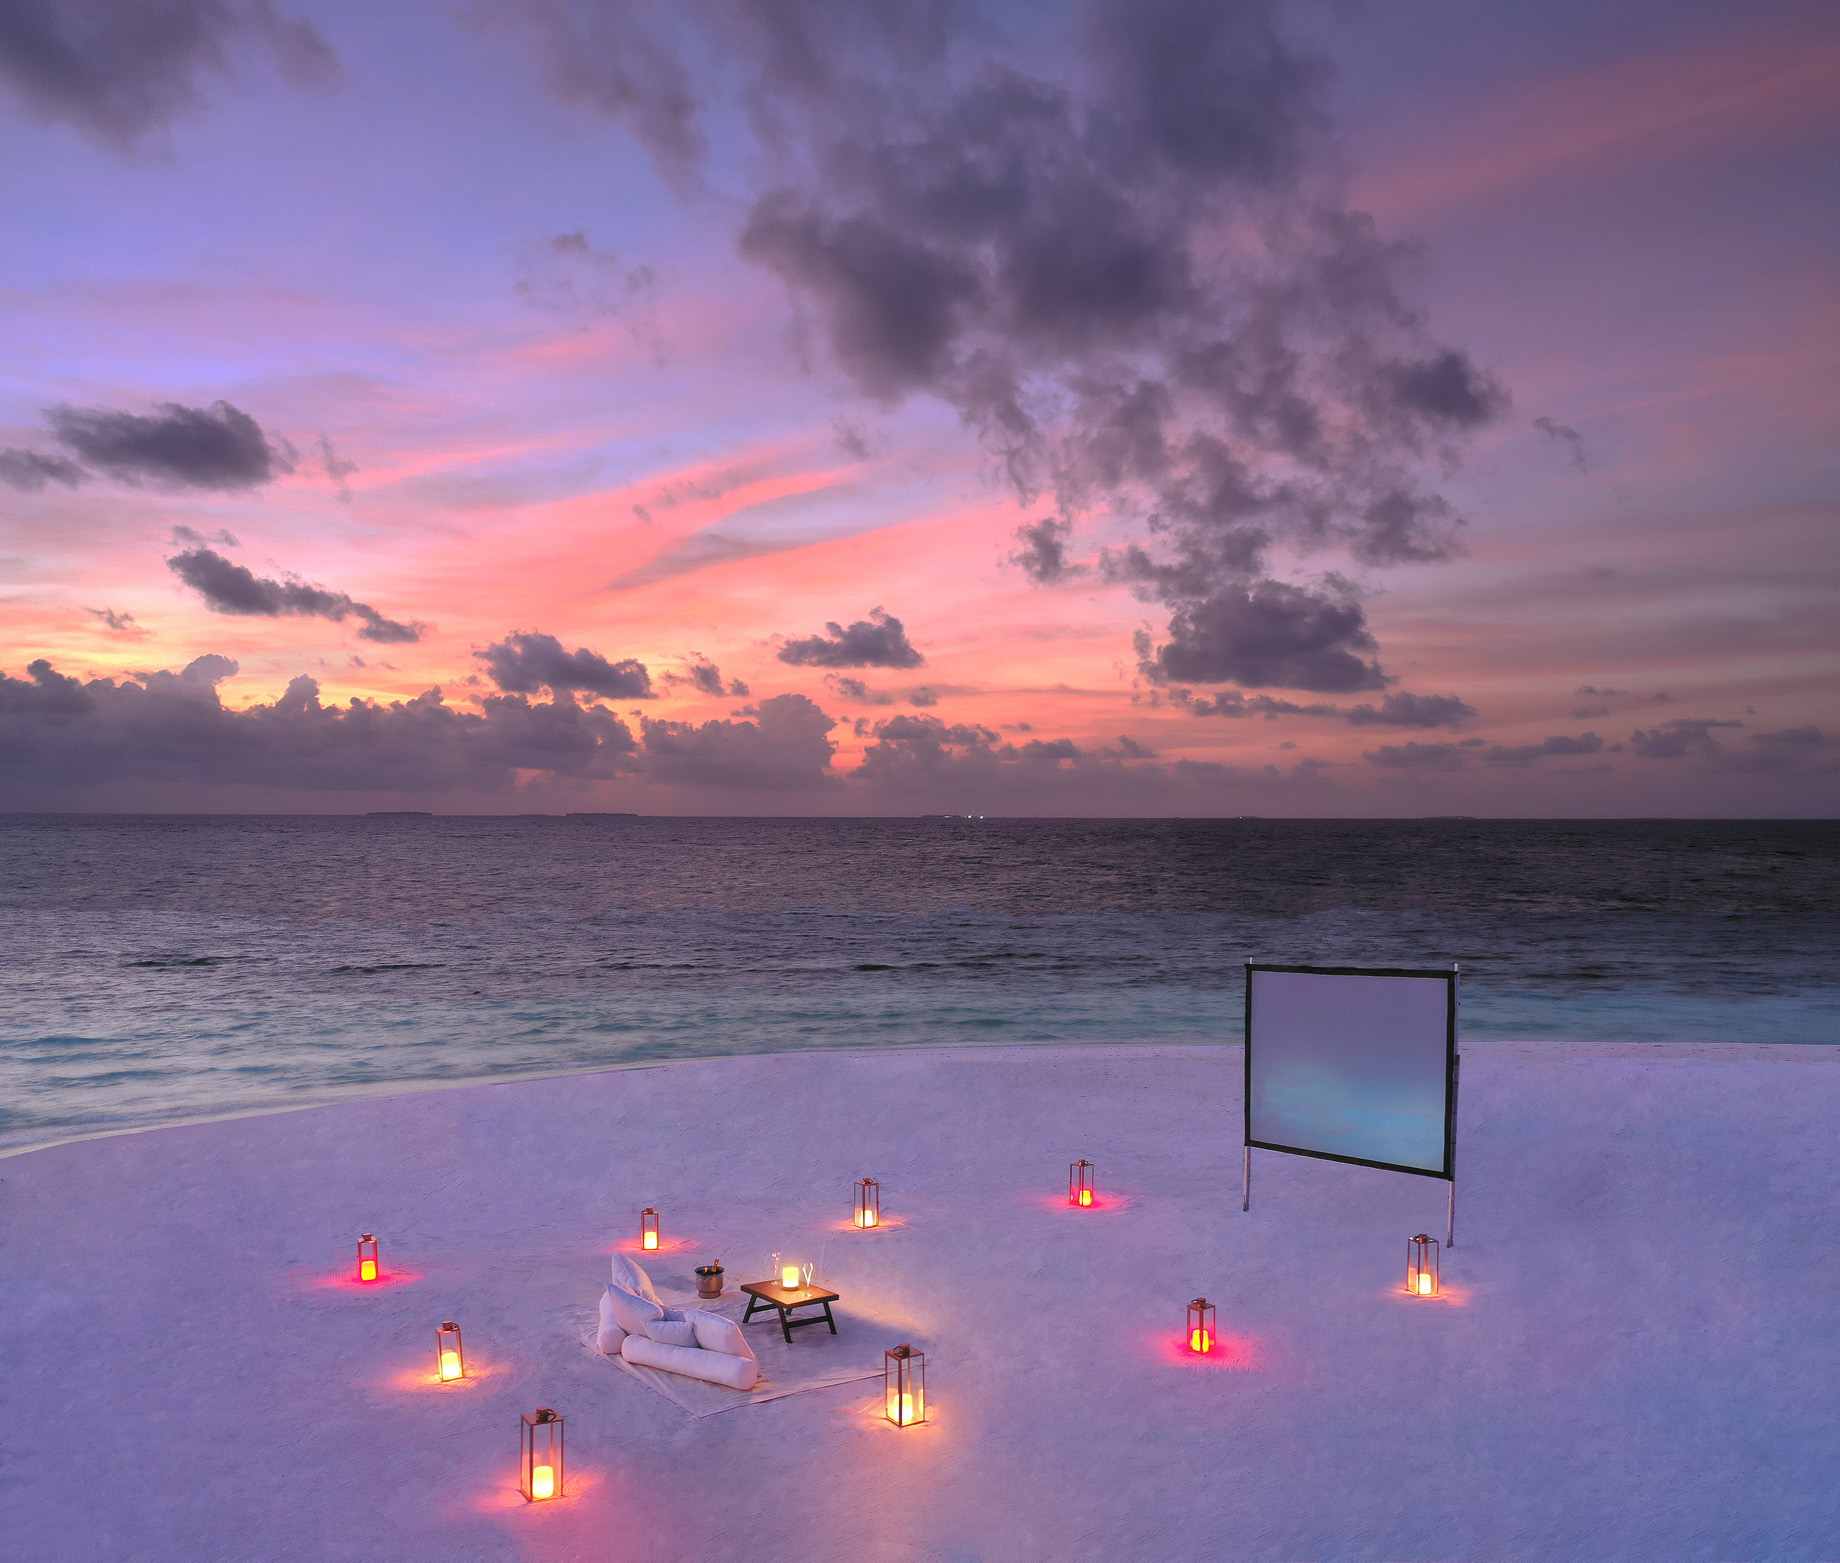 Anantara Kihavah Maldives Villas Resort – Baa Atoll, Maldives – Dining By Design Beach Cinema